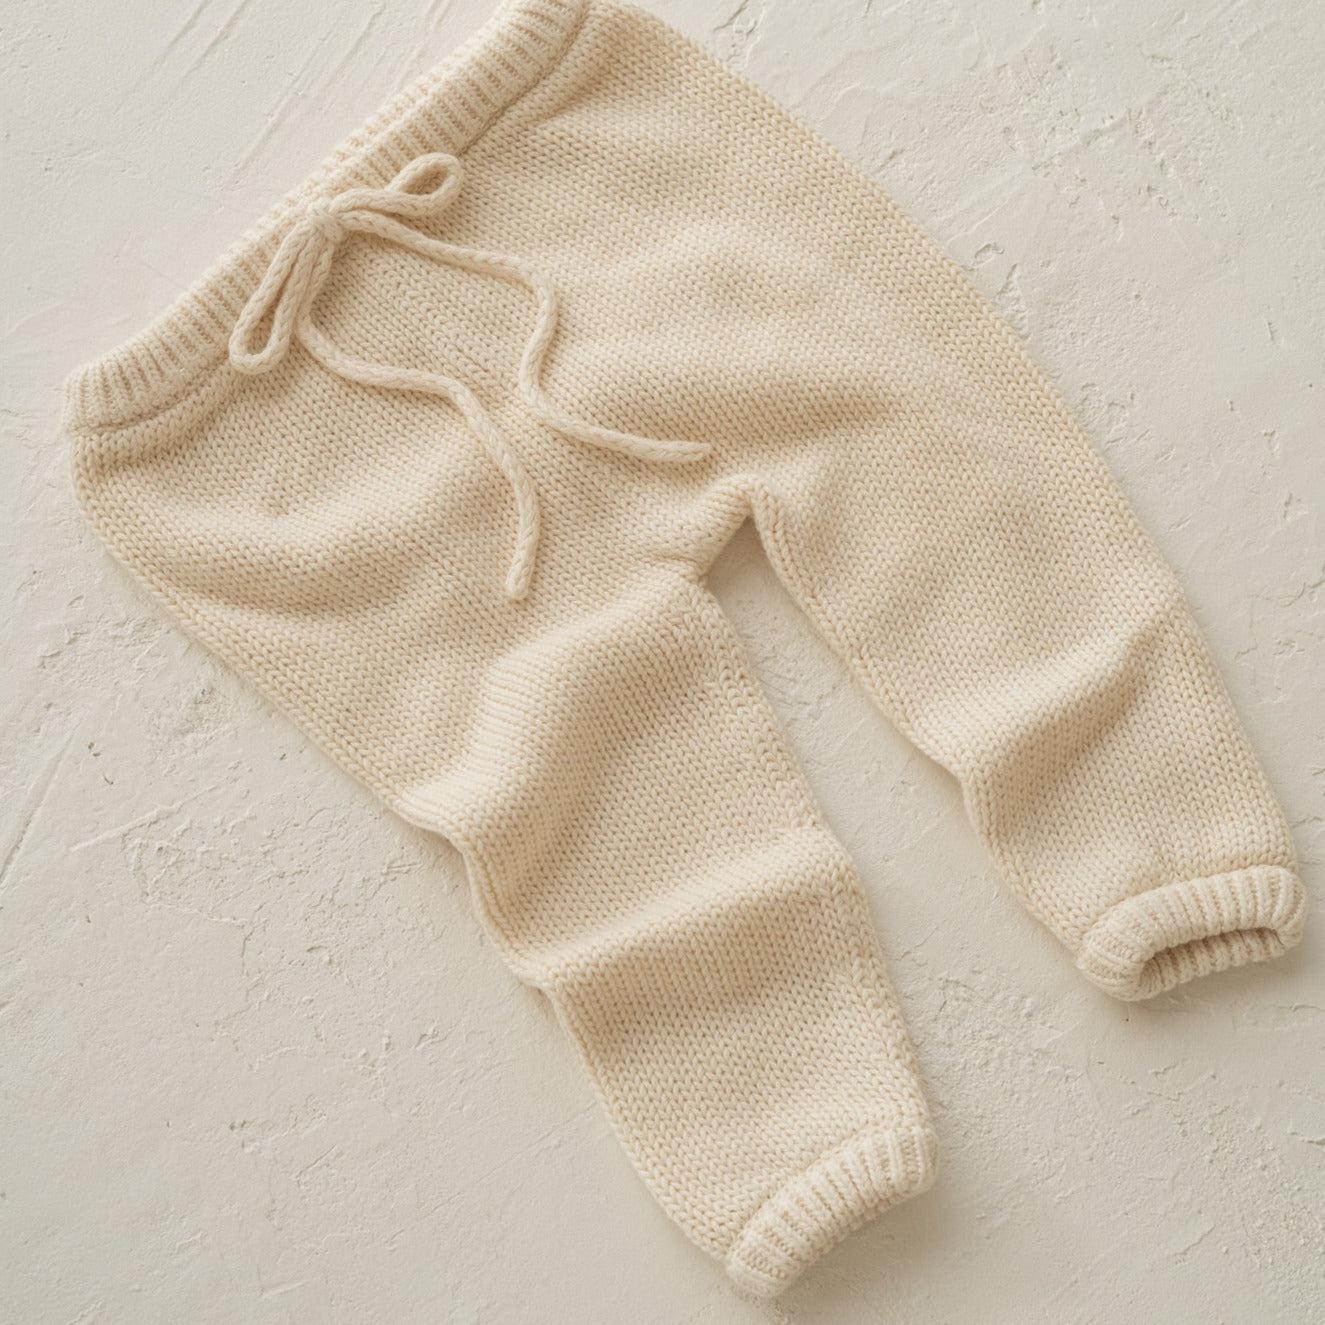 A baby's Illoura the Label "illoura poet pants | vanilla" on a white surface.